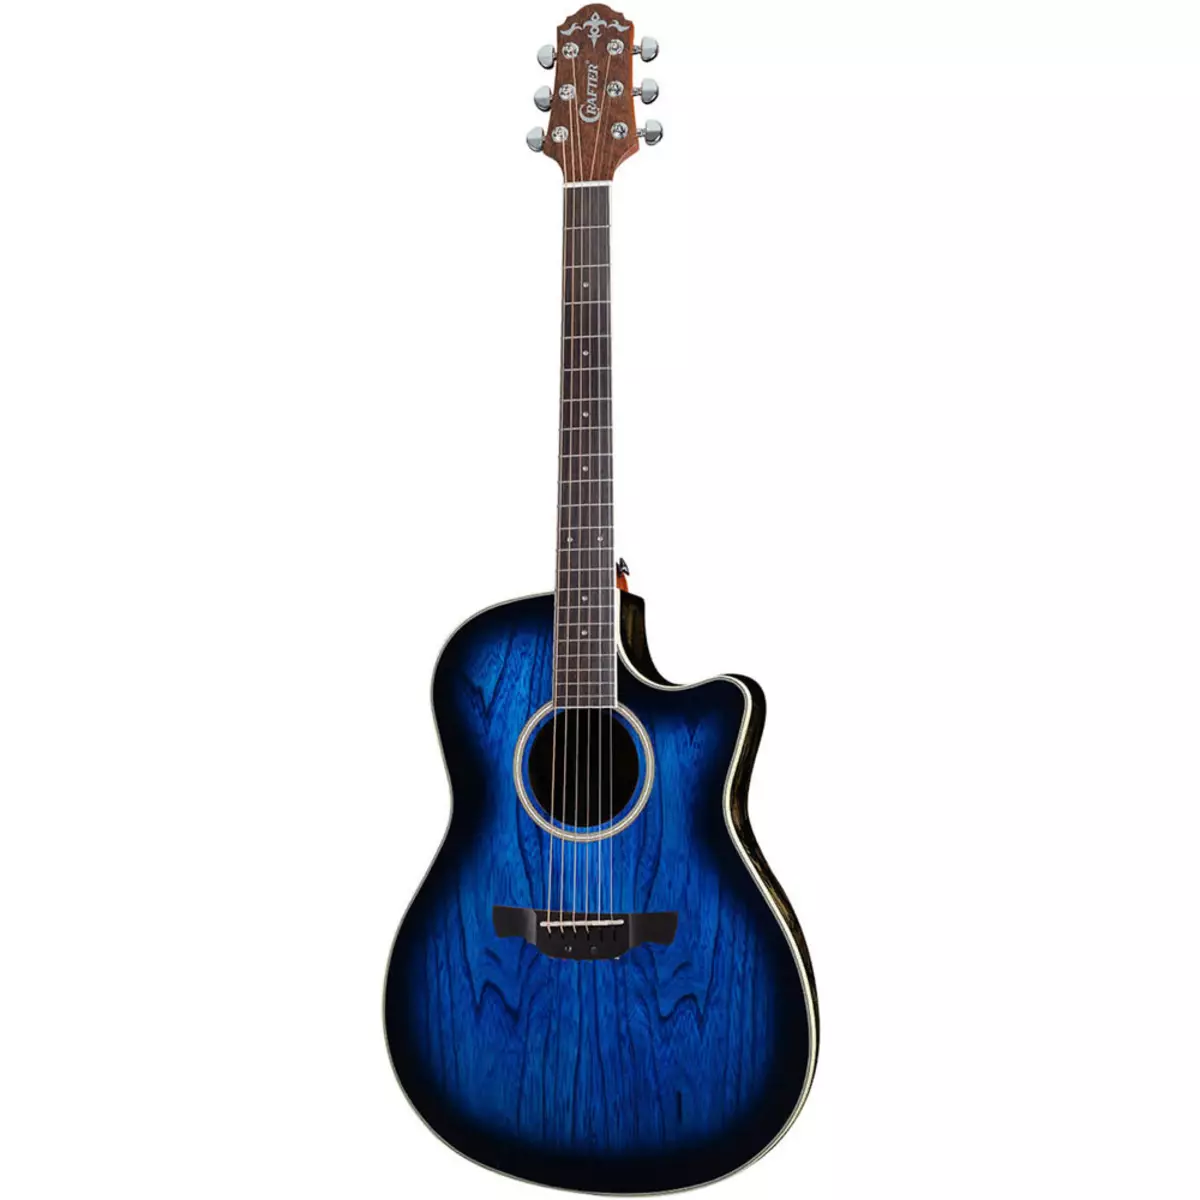 Gitar Staf: Akustik sareng élustentik, D-7 / n sareng HD-250 CE / N Gitar, gambaran tina model Korea sanés 27116_5